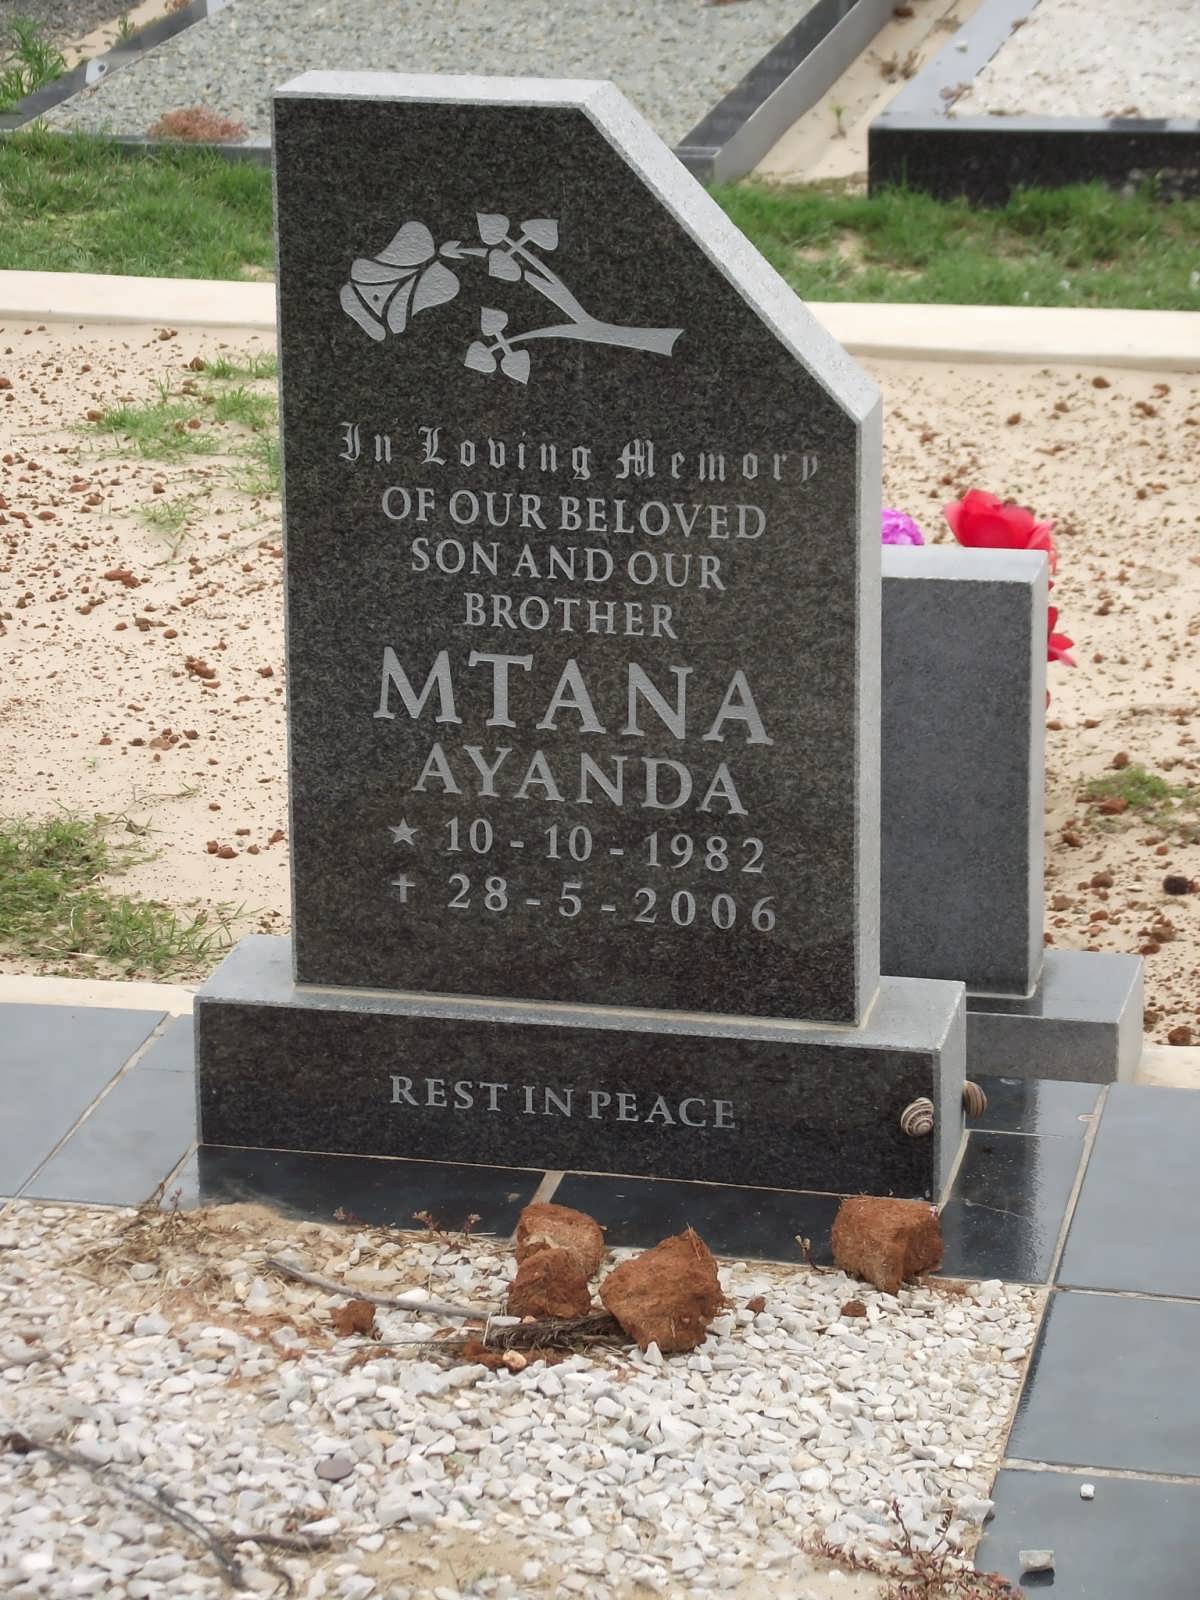 MTANA Ayanda 1982-2006